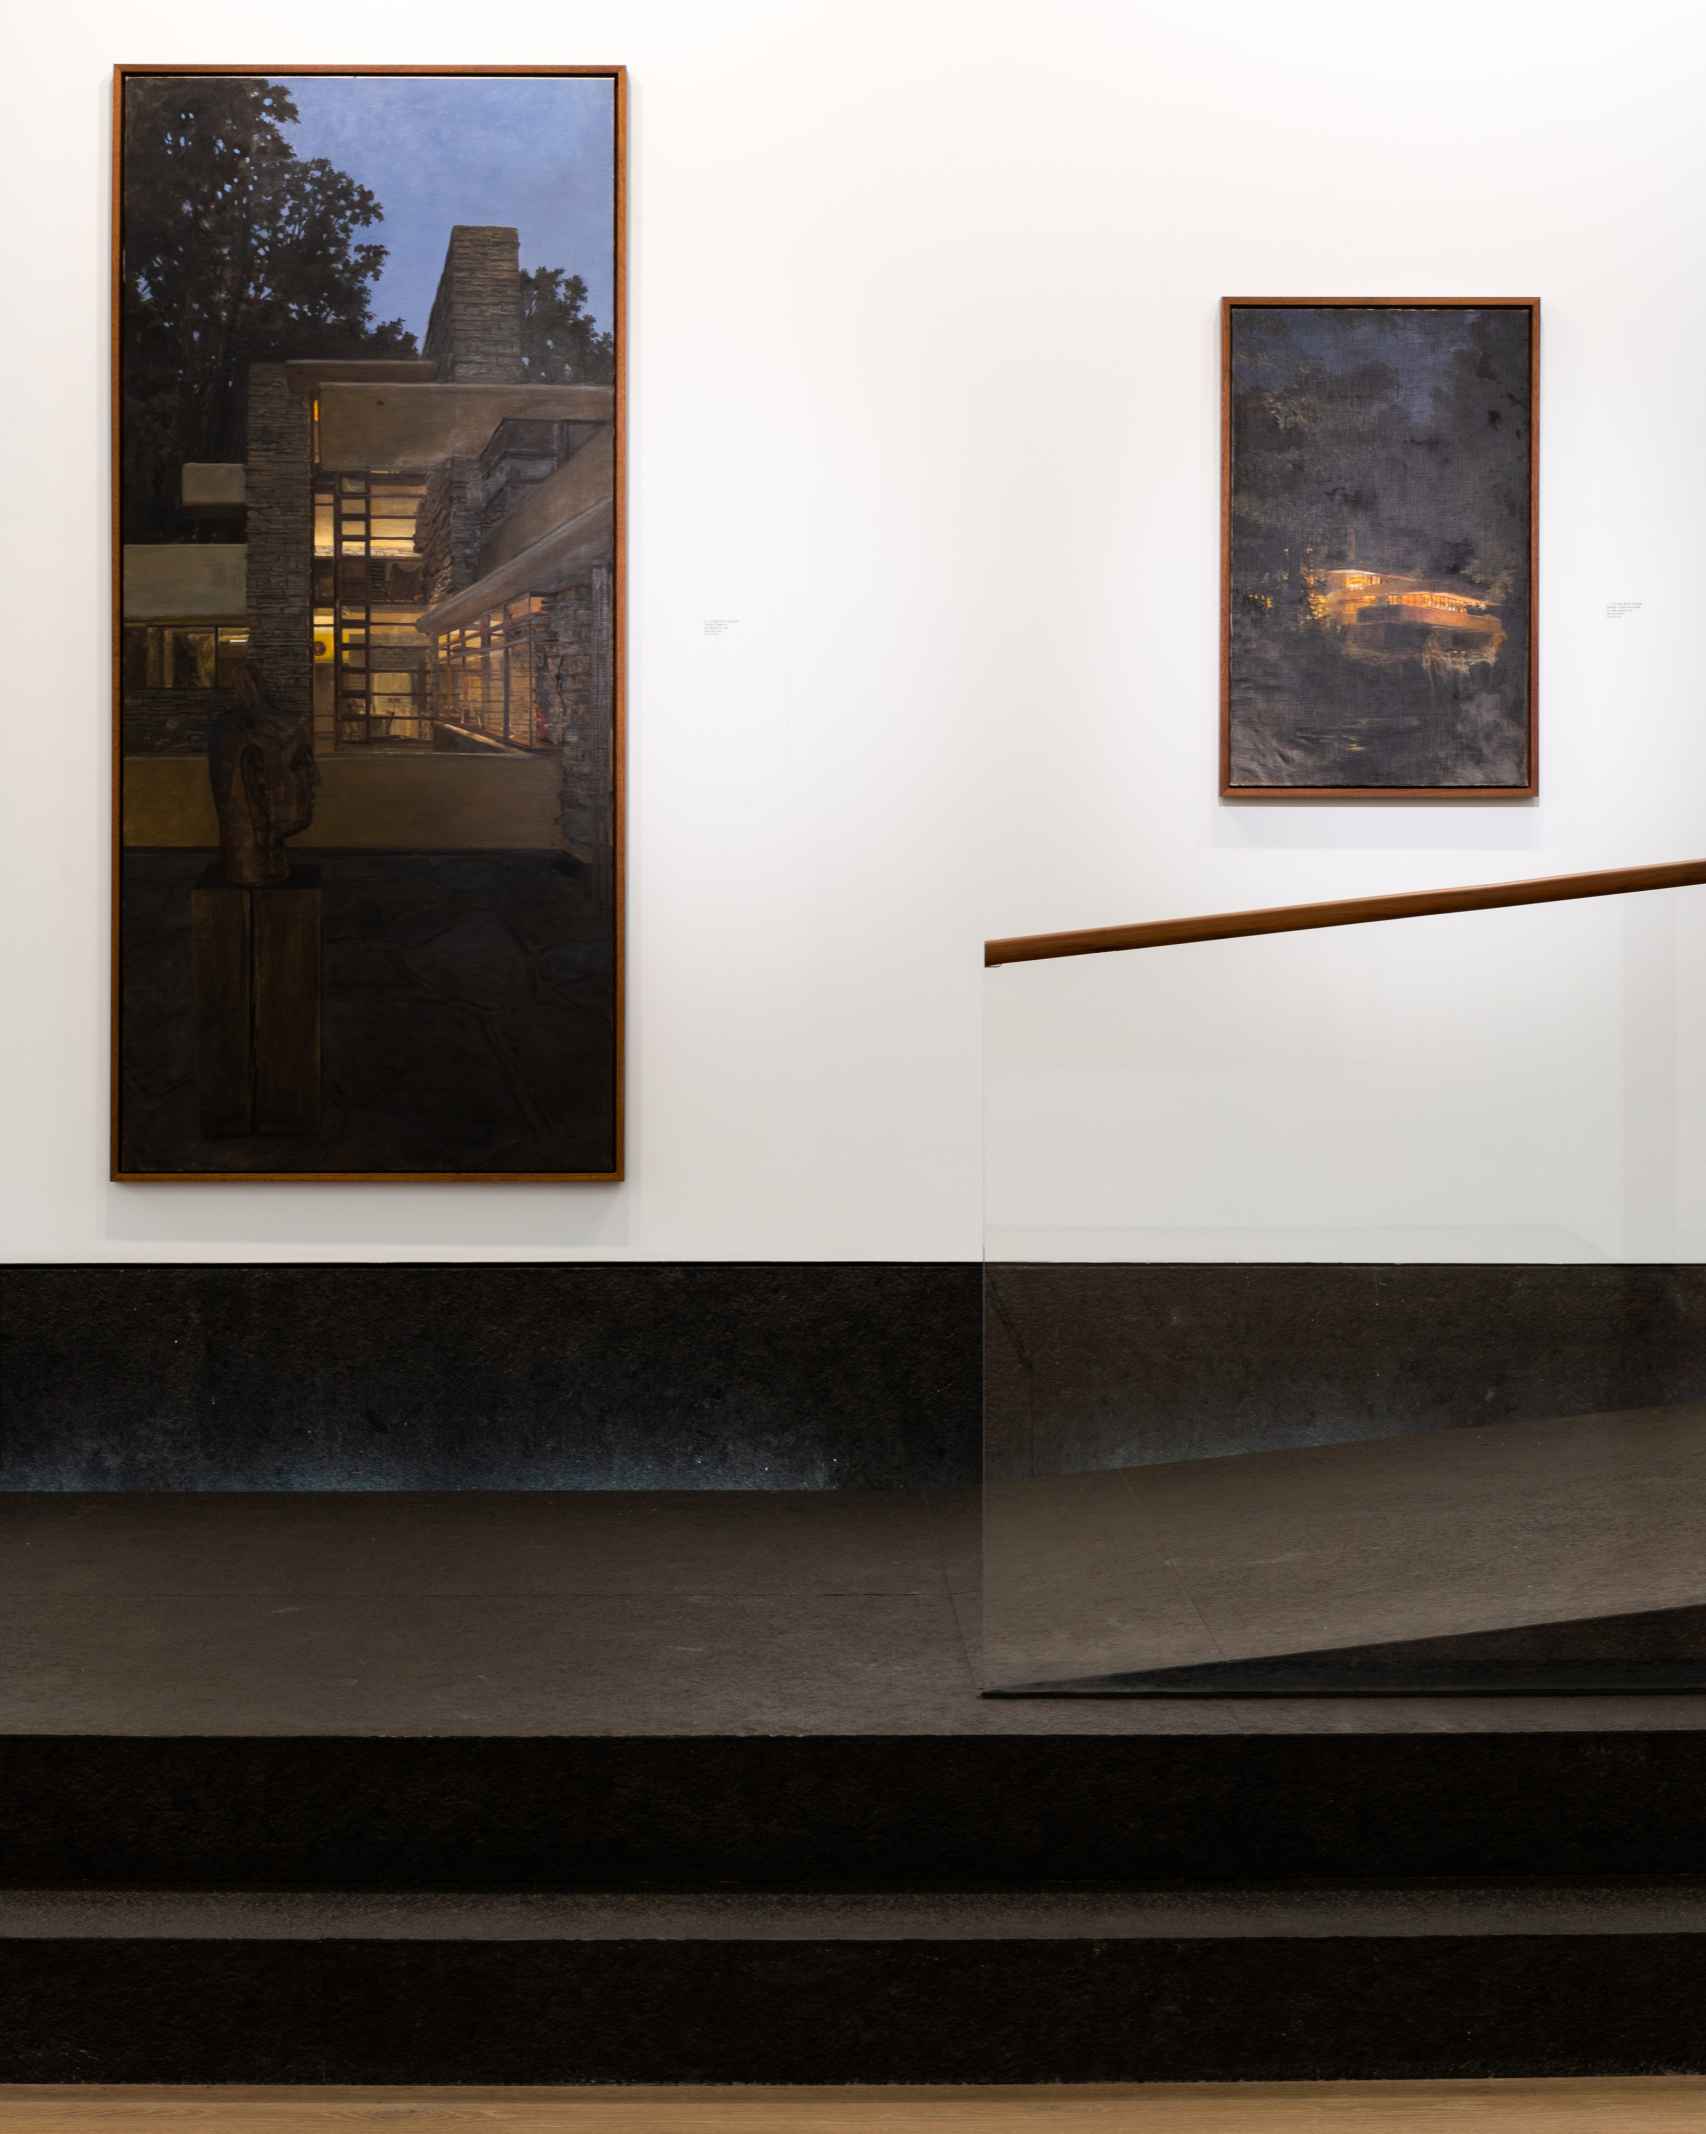 Dos de las pinturas de la serie dedicada a la Casa de la Cascada de Frank Lloyd Wright